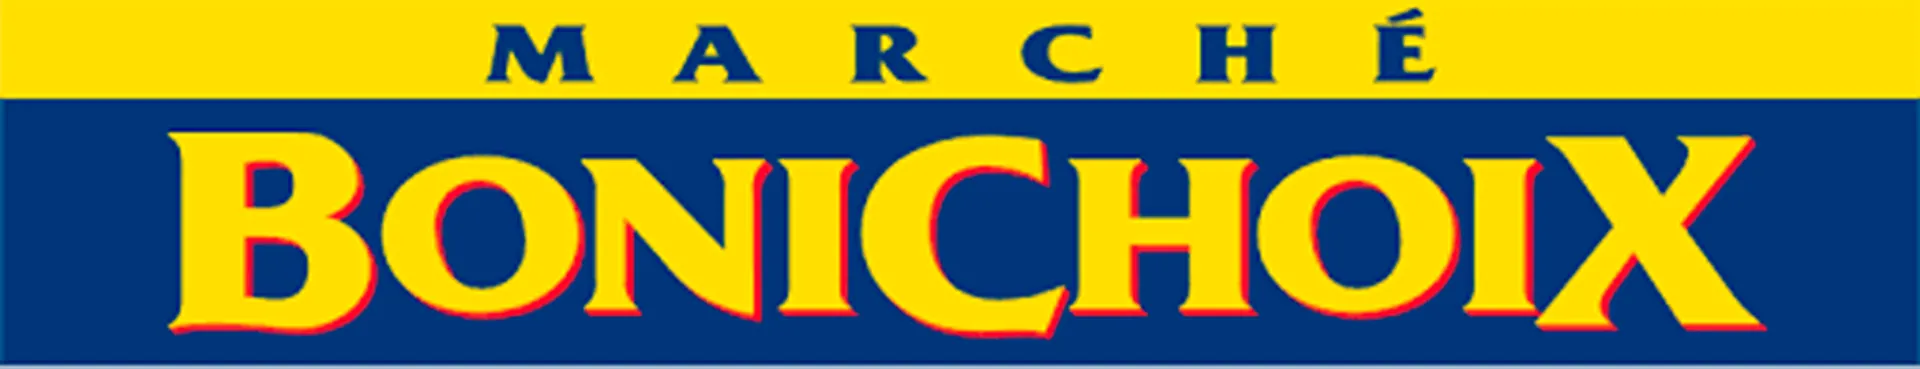 MARCHÉ BONICHOIX logo